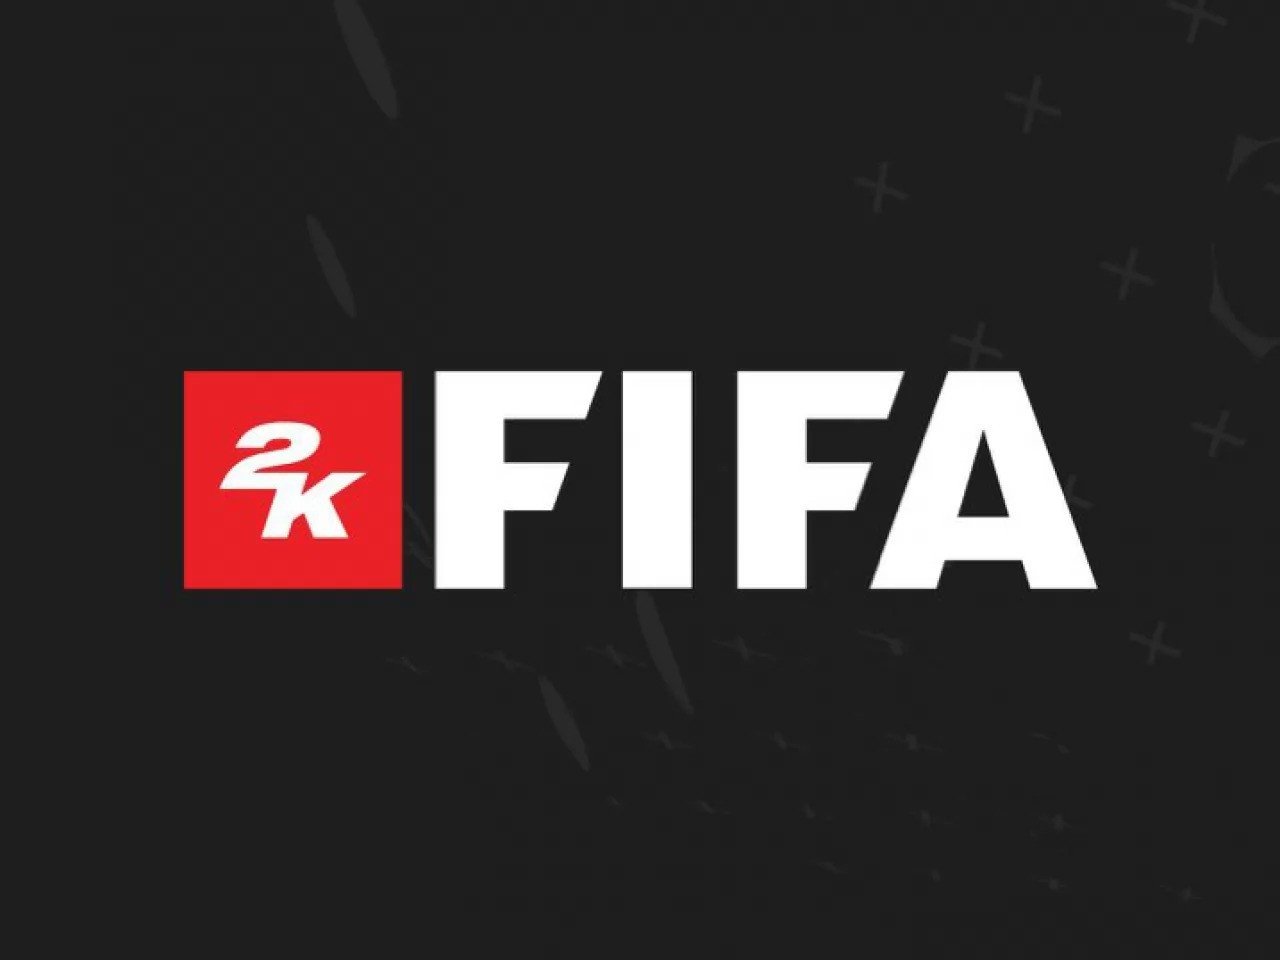 Immagine di FIFA 2K potrebbe davvero uscire quest'anno secondo un rivenditore